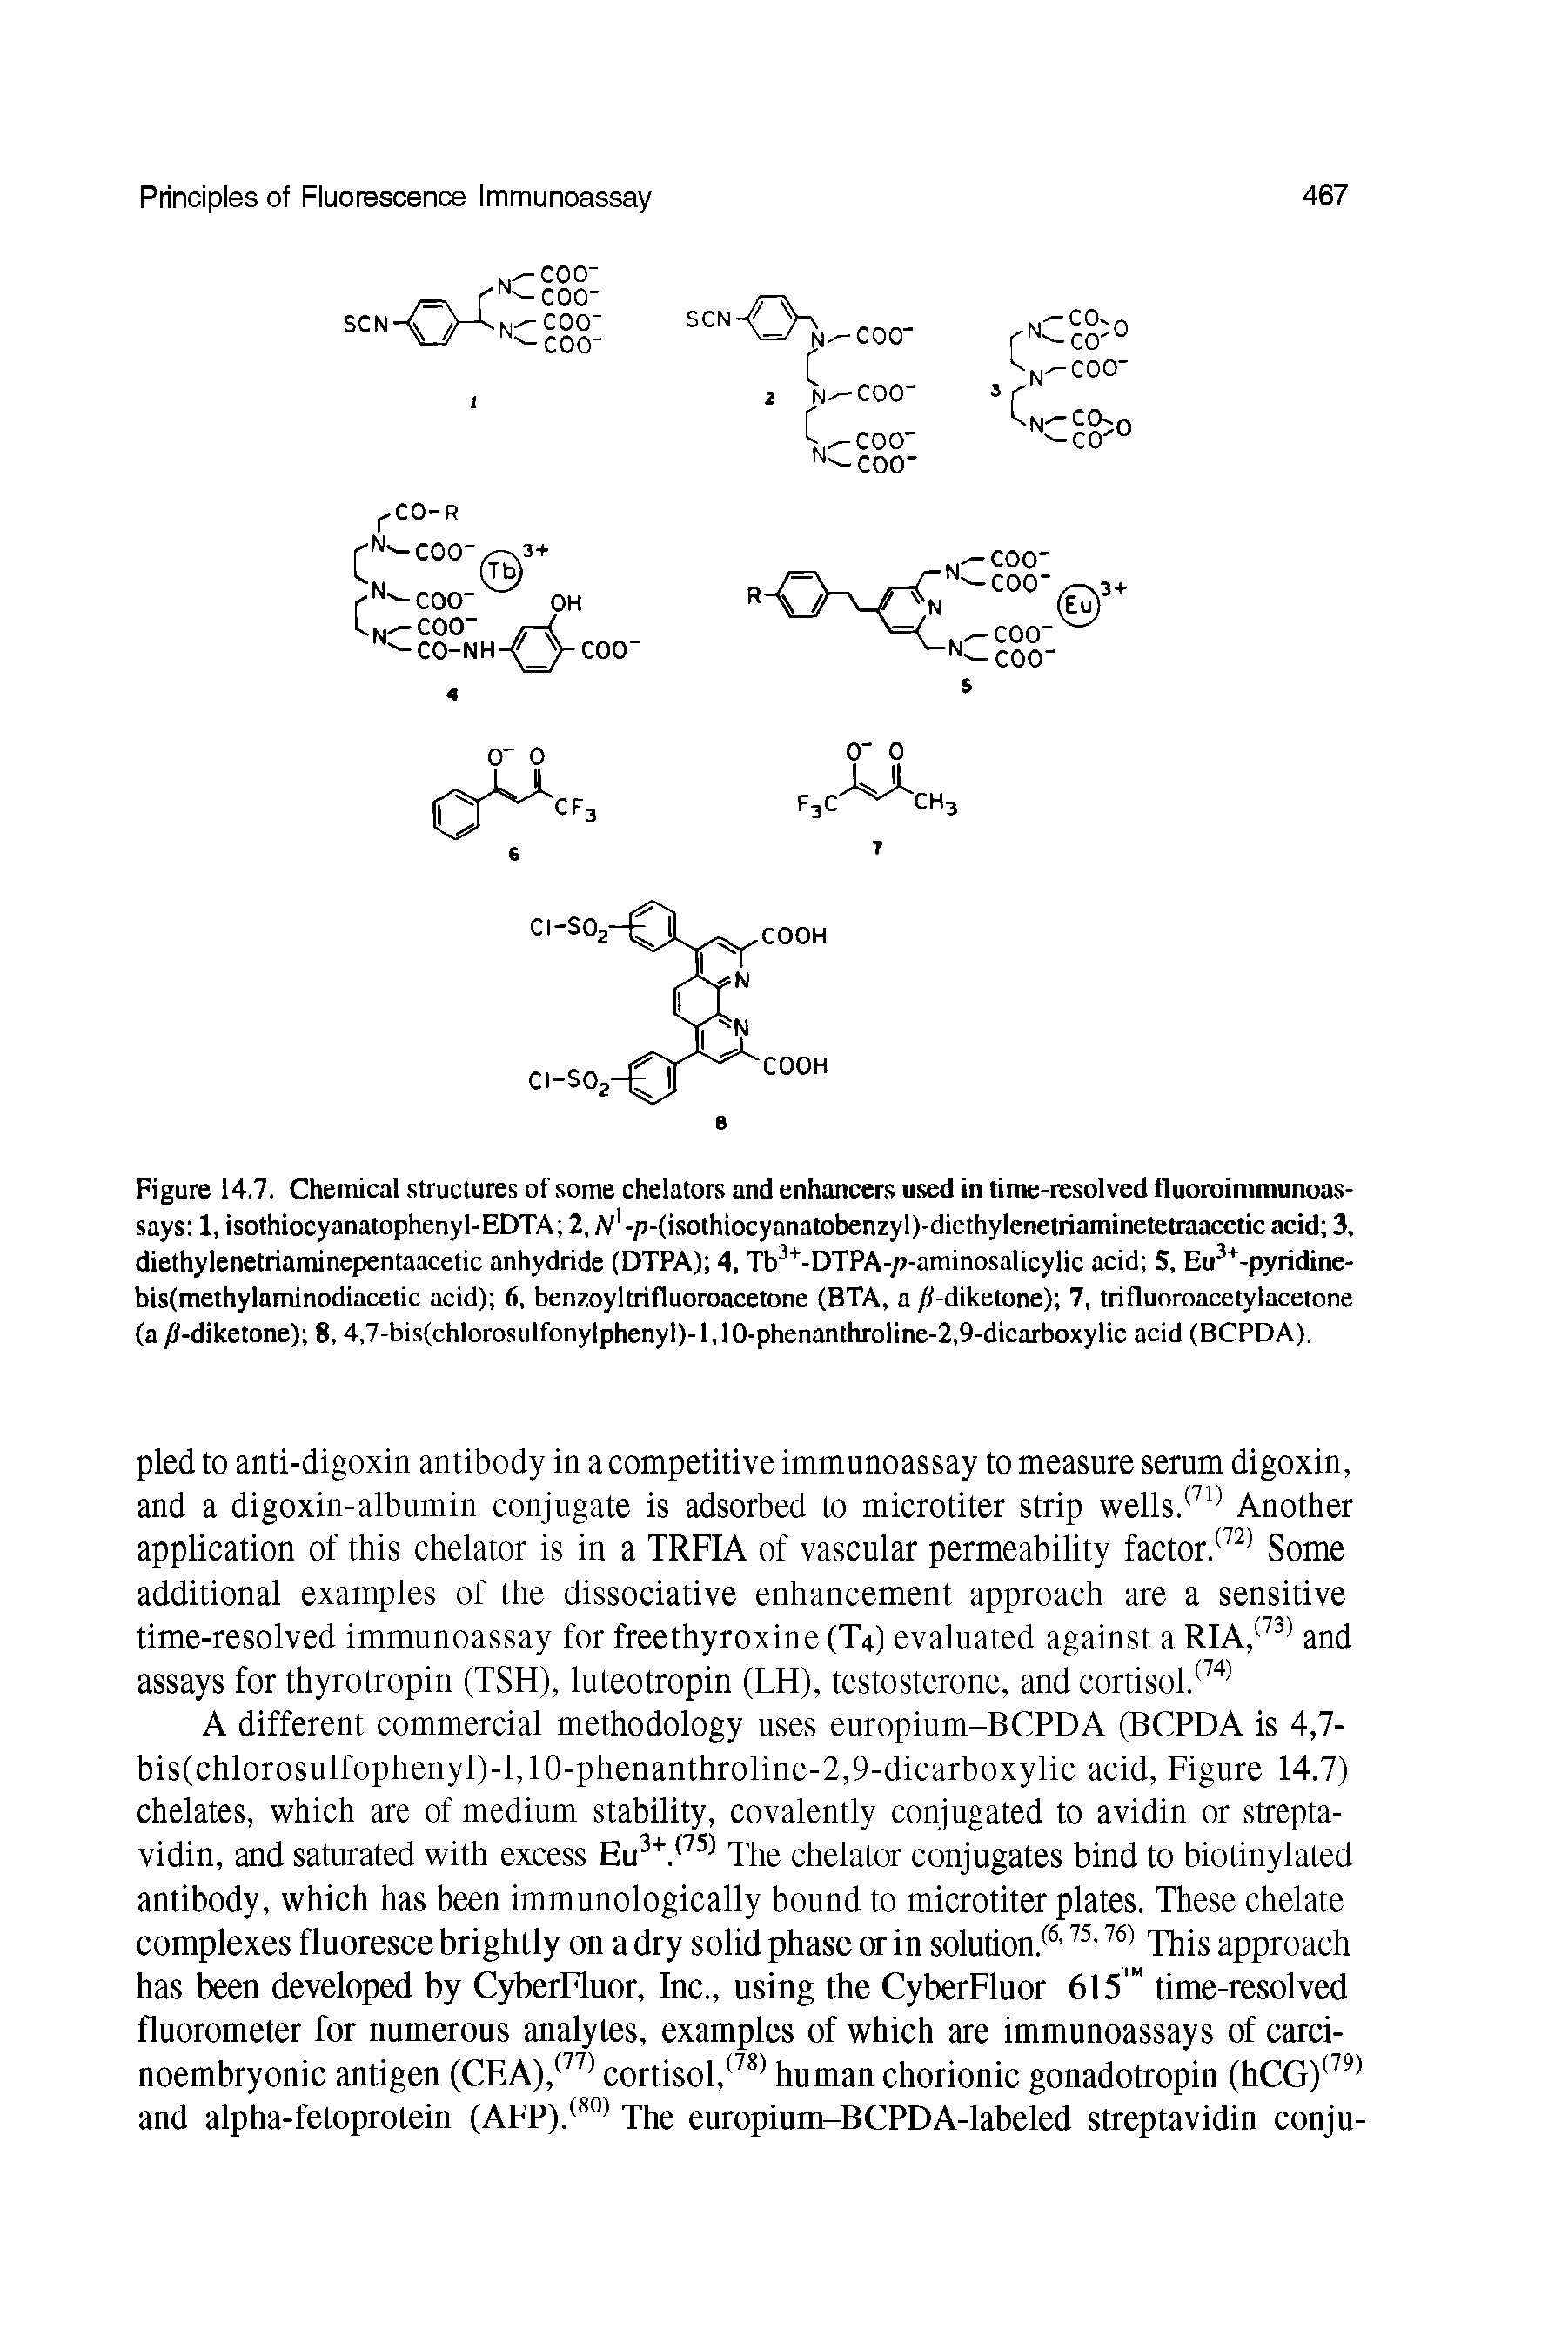 Figure 14.7. Chemical structures of some chelators and enhancers used in time-resolved fluoroimmunoas-says 1, isothiocyanatophenyl-EDTA 2, Ari-p-(isothiocyanatobenzyl)-diethylenetriaminetetraaceticacid 3, diethylenetriaminepentaacetic anhydride (DTPA) 4, Tb3+-DTPA-/t-aminosalicylic acid S, Eu3+-pyridine-bisfmethylaminodiacetic acid) 6, benzoyltrifluoroacetone (BTA, a /i-diketone) 7, trifluoroacetylacetone (a/jt-diketone) 8,4,7-bis(chlorosulfonylphenyl)-l,10-phenanthroline-2,9-dicarboxylic acid (BCPDA).